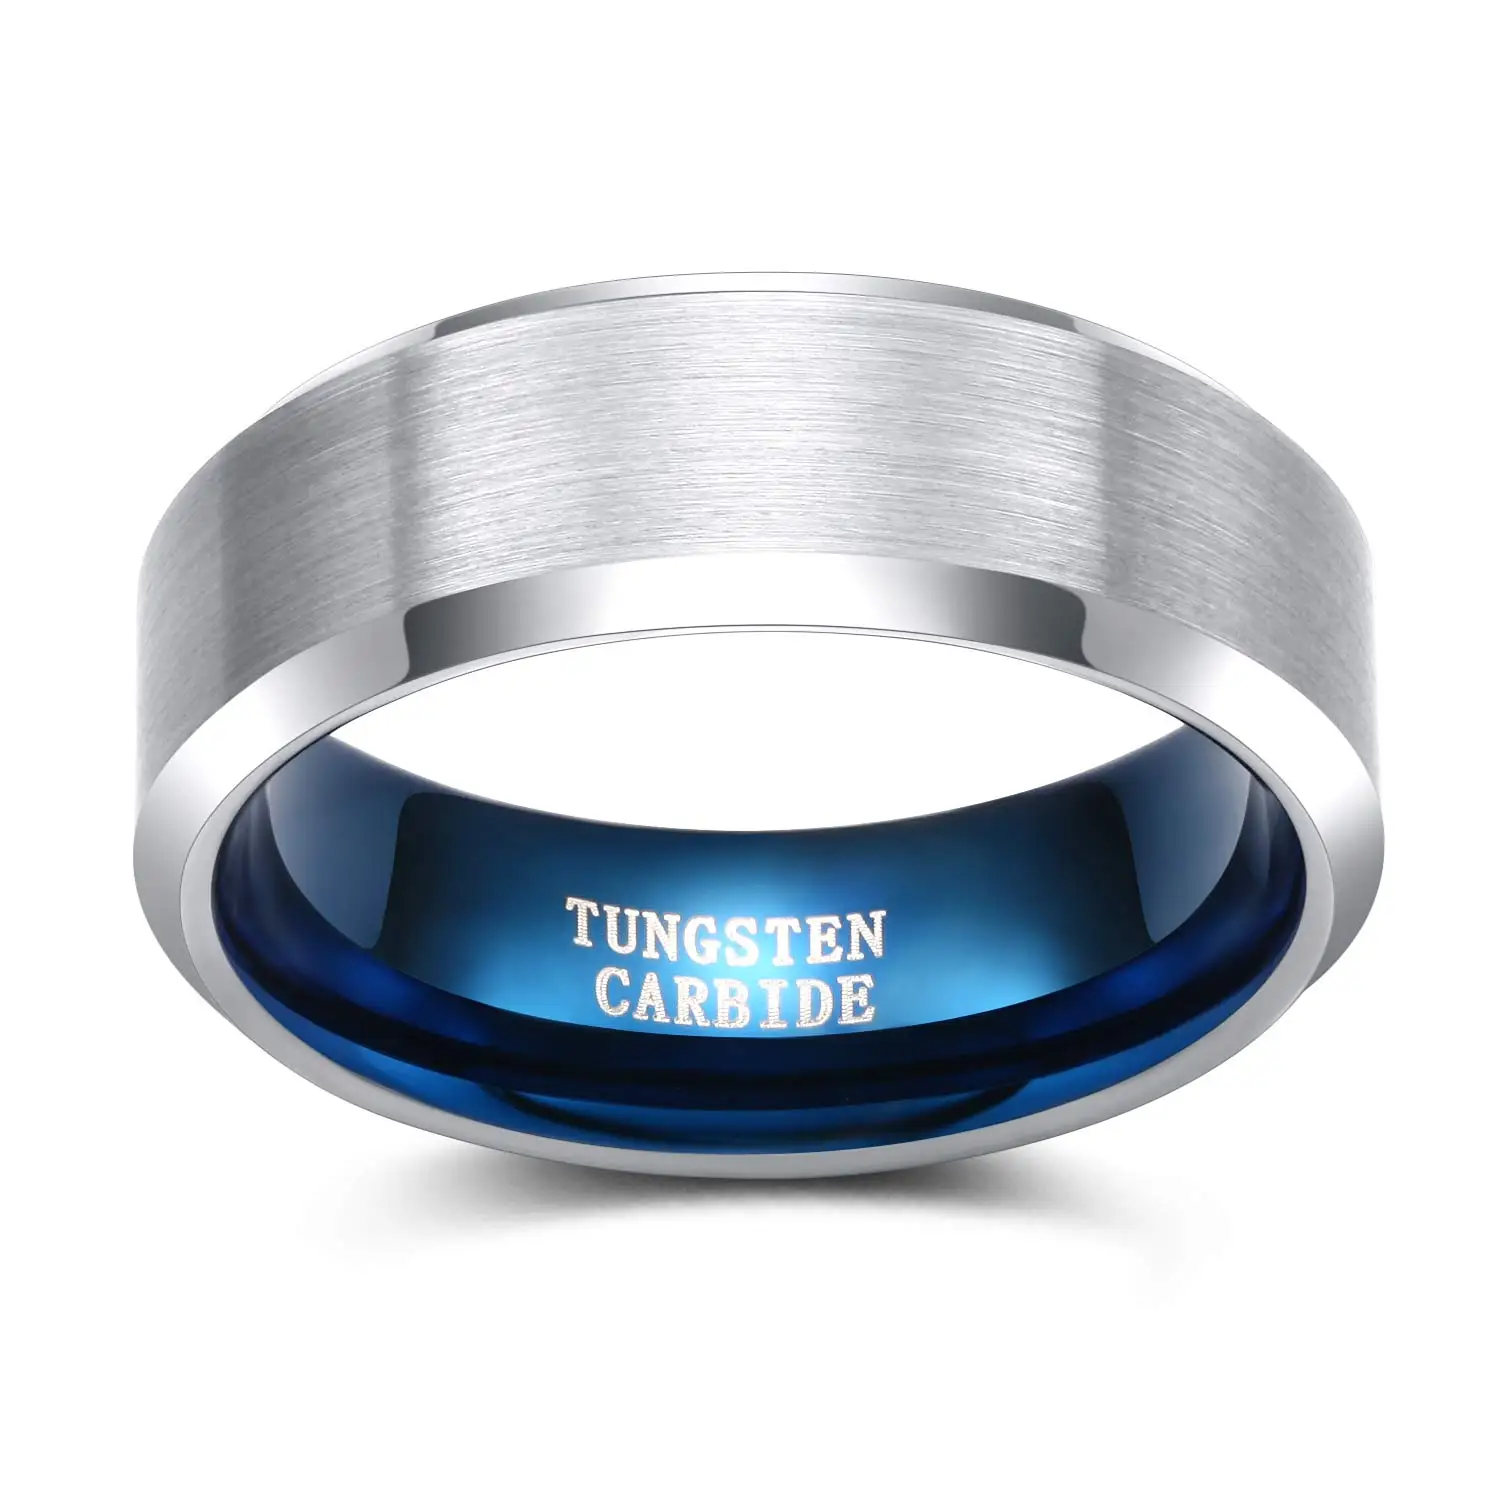 Tigrade 4/6/8 мм Классический Обручальное кольцо обручальные серебряные кольца голубые по индивидуальному заказу гравировка Вольфрам карбидные кольца для мужчин и женщин Size4-14